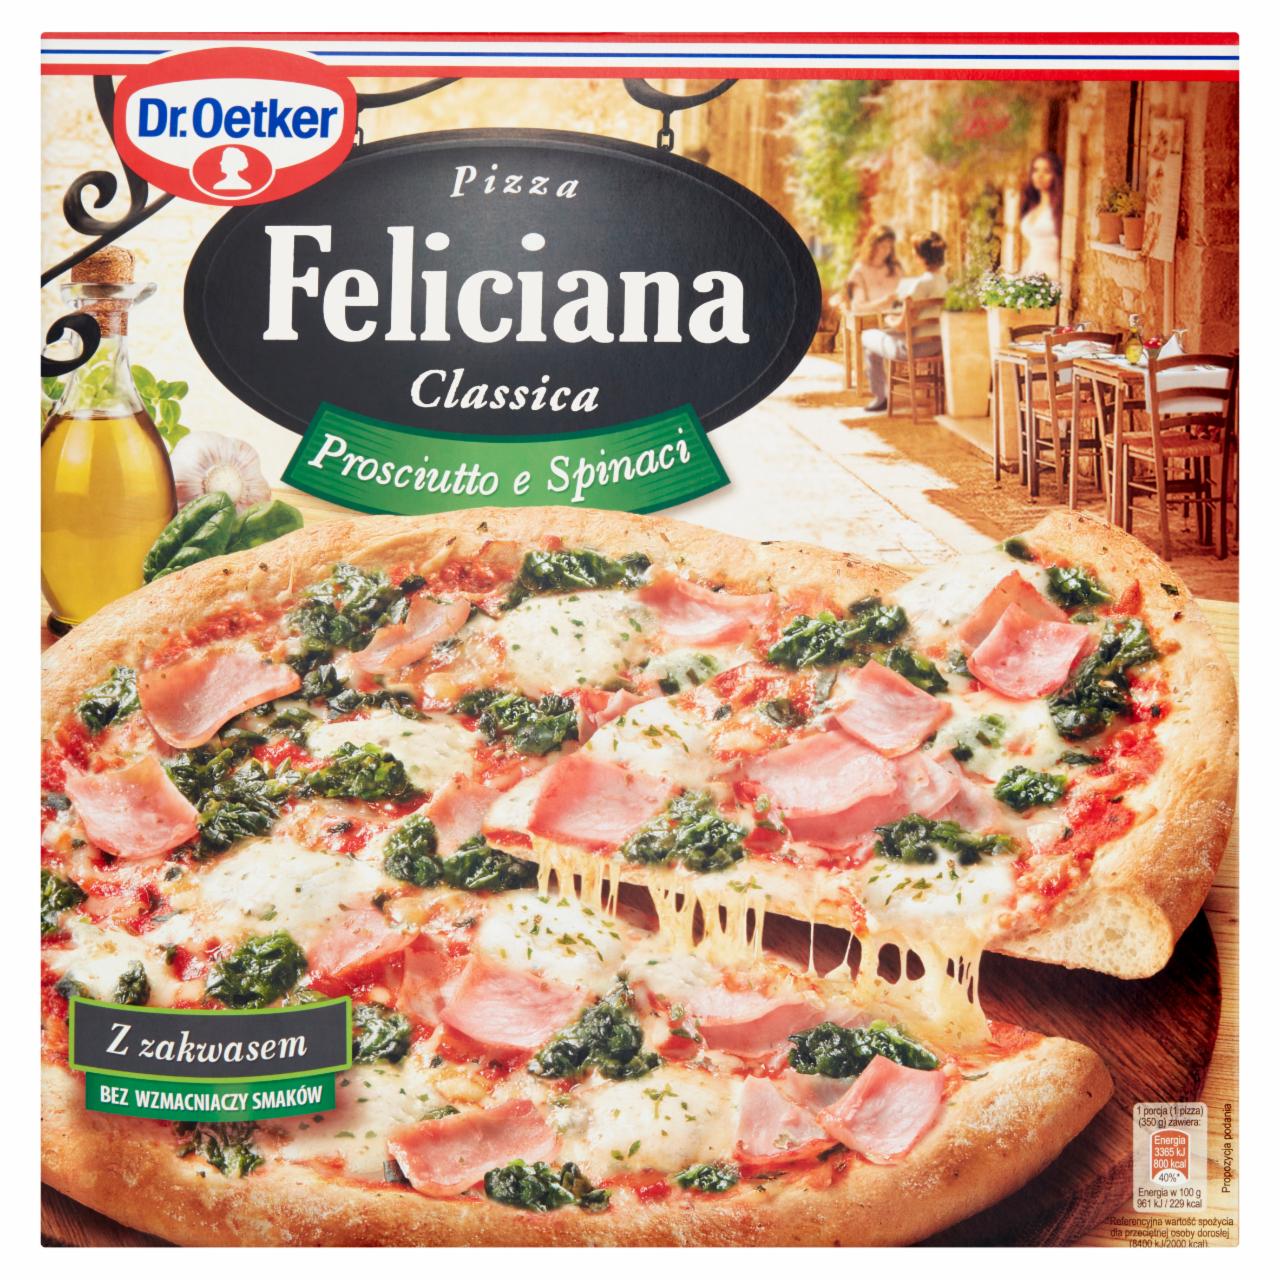 Photo - Dr. Oetker Feliciana Classica Prosciutto e Spinaci Pizza 350 g